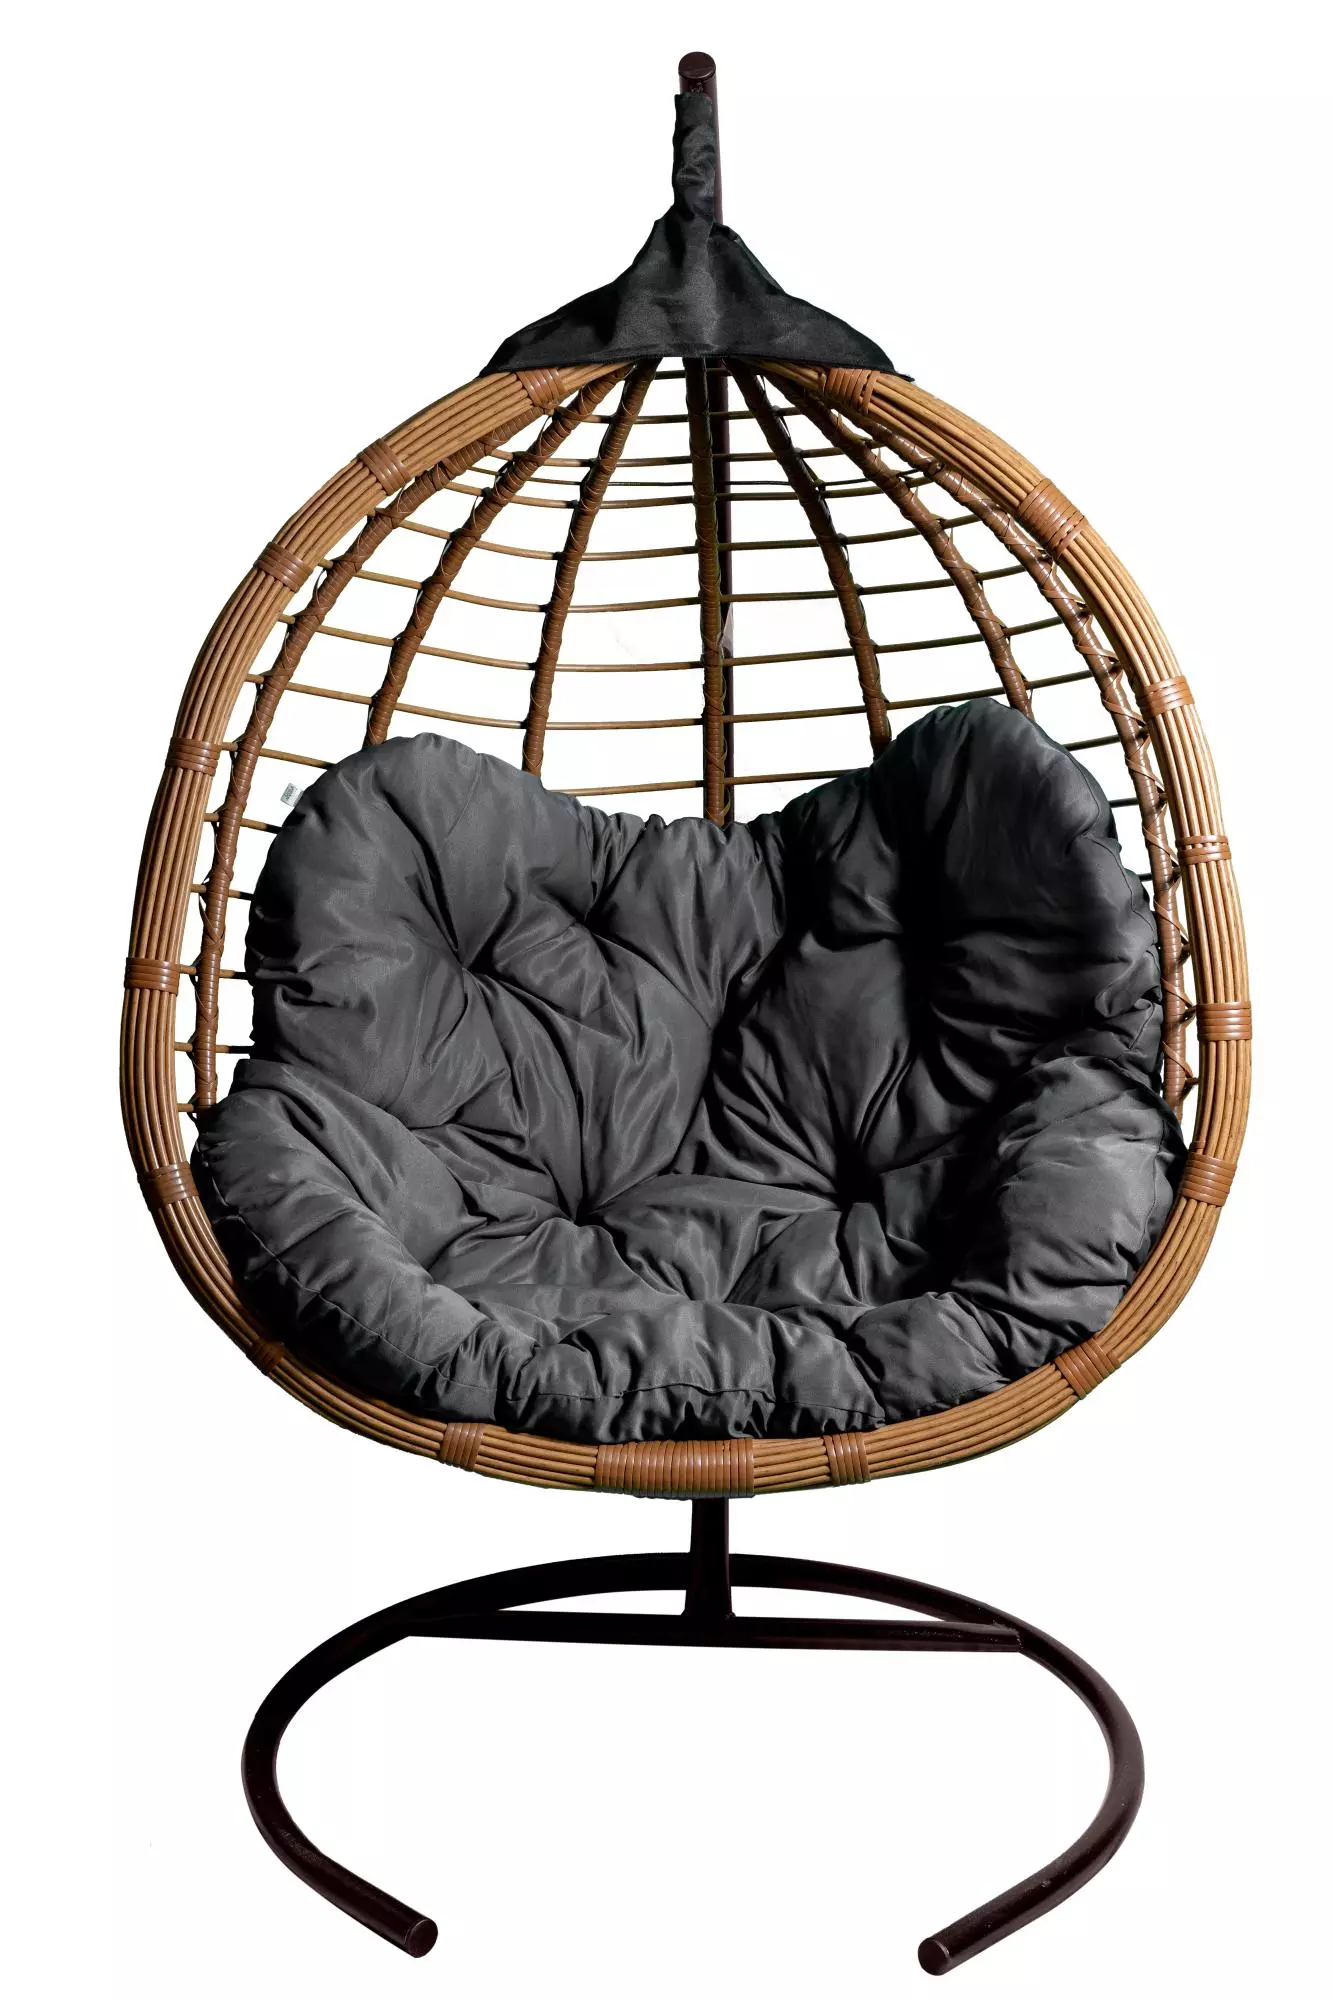 Кресло подвесное двойное Ортис CN900-МТКОР цв.корзины бежевый, подушки серый Garden story 